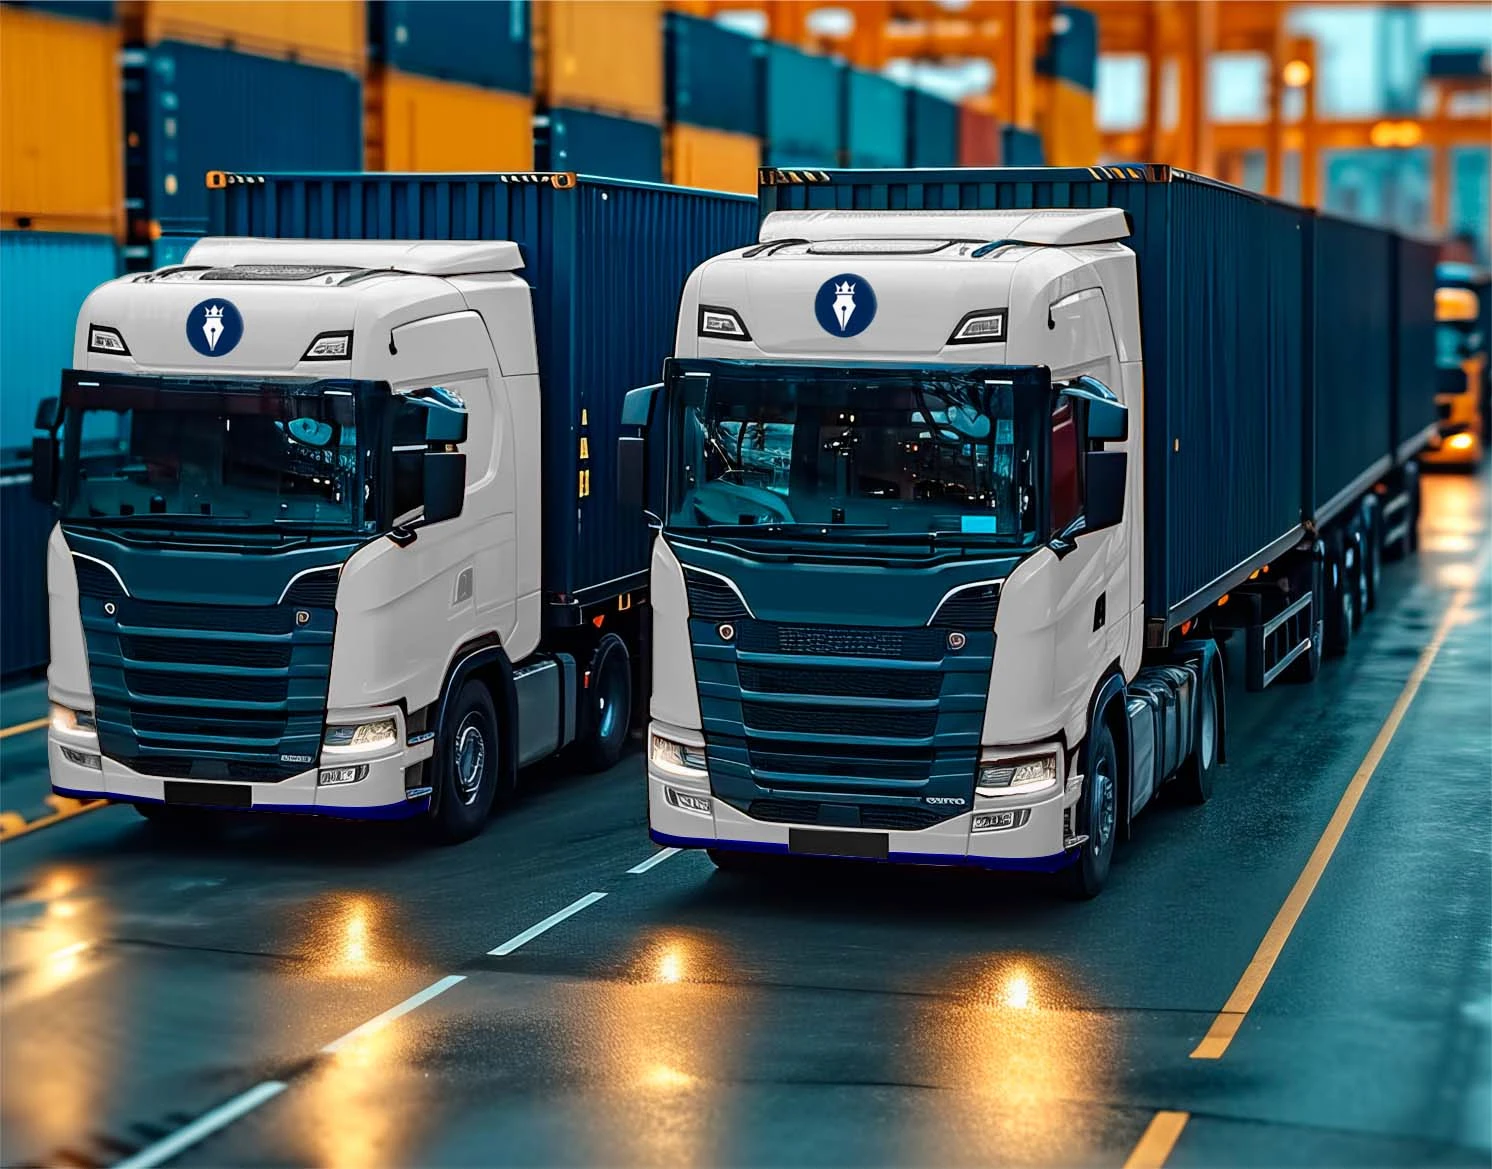 Duas carretas modernas lado a lado em um terminal de carga, com contêineres ao fundo, simbolizando a robustez e eficiência no segmento de contabilidade para empresas de transporte.